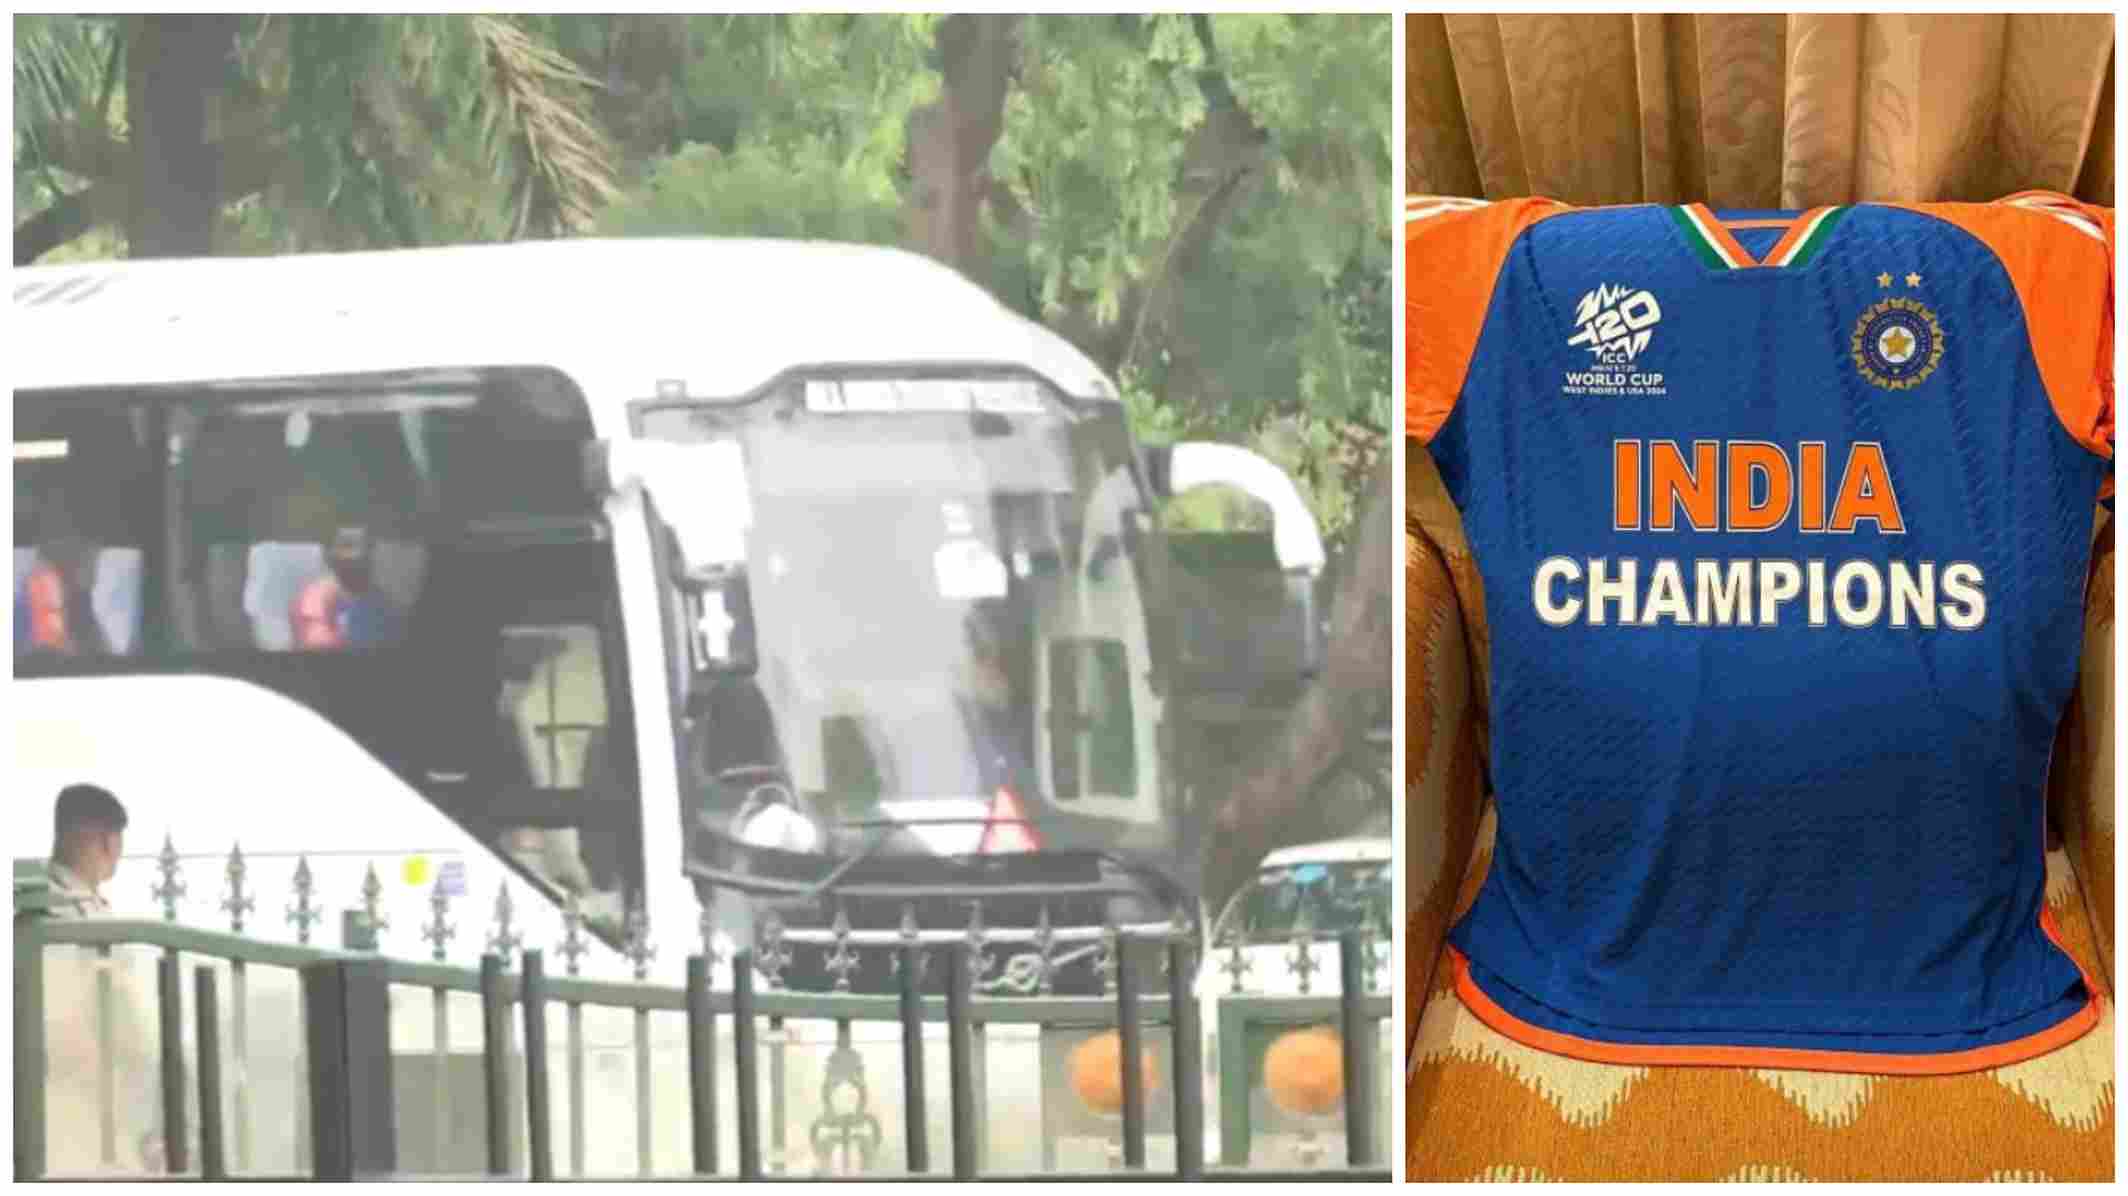 टी20 विश्व कप जीतने वाले टीम इंडिया पीएम मोदी के आवास पर पहुंची, खिलाड़ियों ने पहनी स्पेशल जर्सी